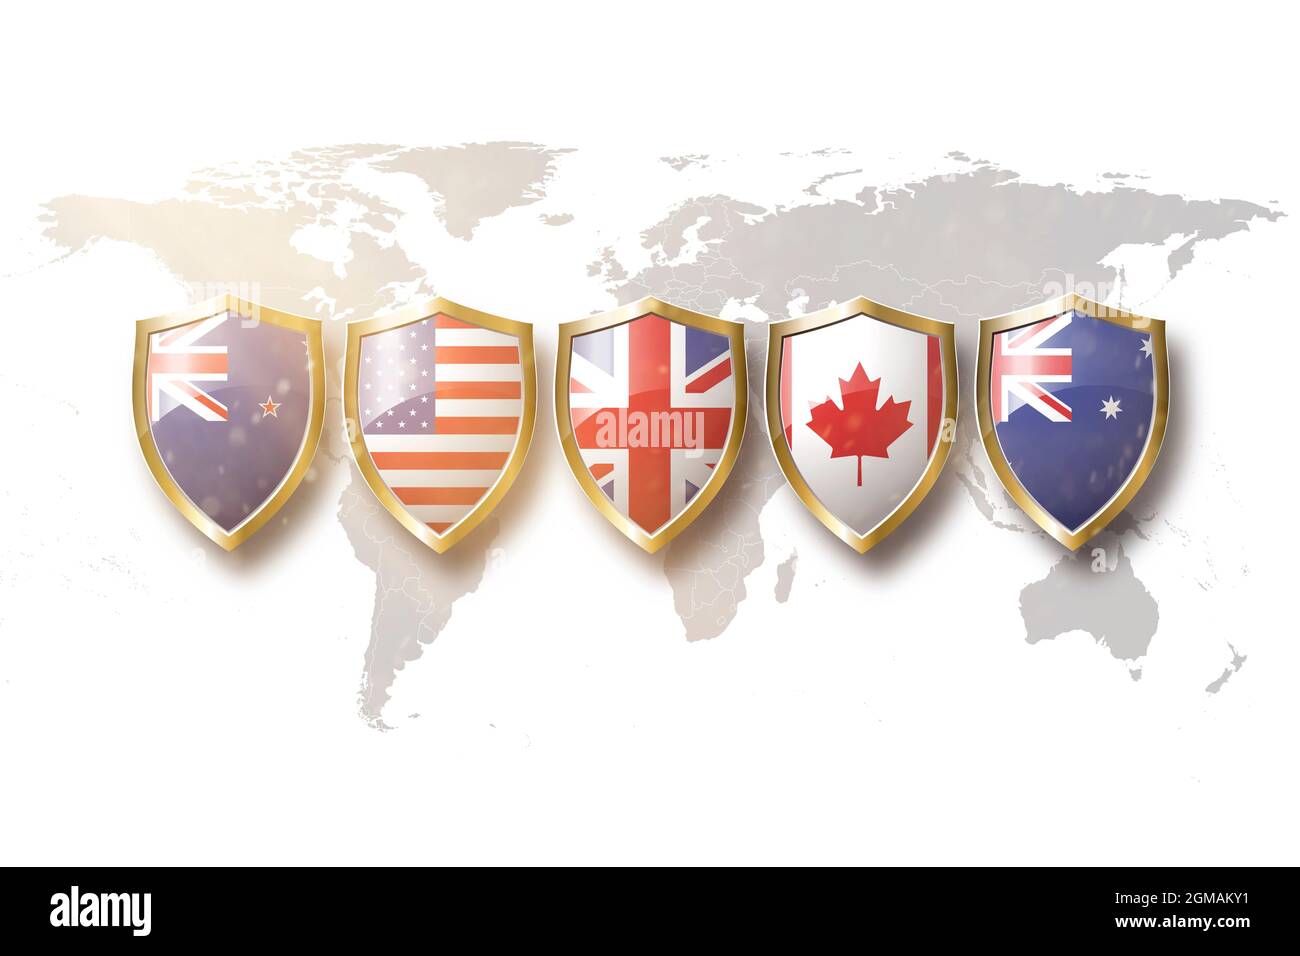 Australien, USA, Großbritannien, kanada und Neuseeland Flaggen in goldenem Schild auf der Weltkarte Hintergrund.5 Augen Allianz. Stockfoto